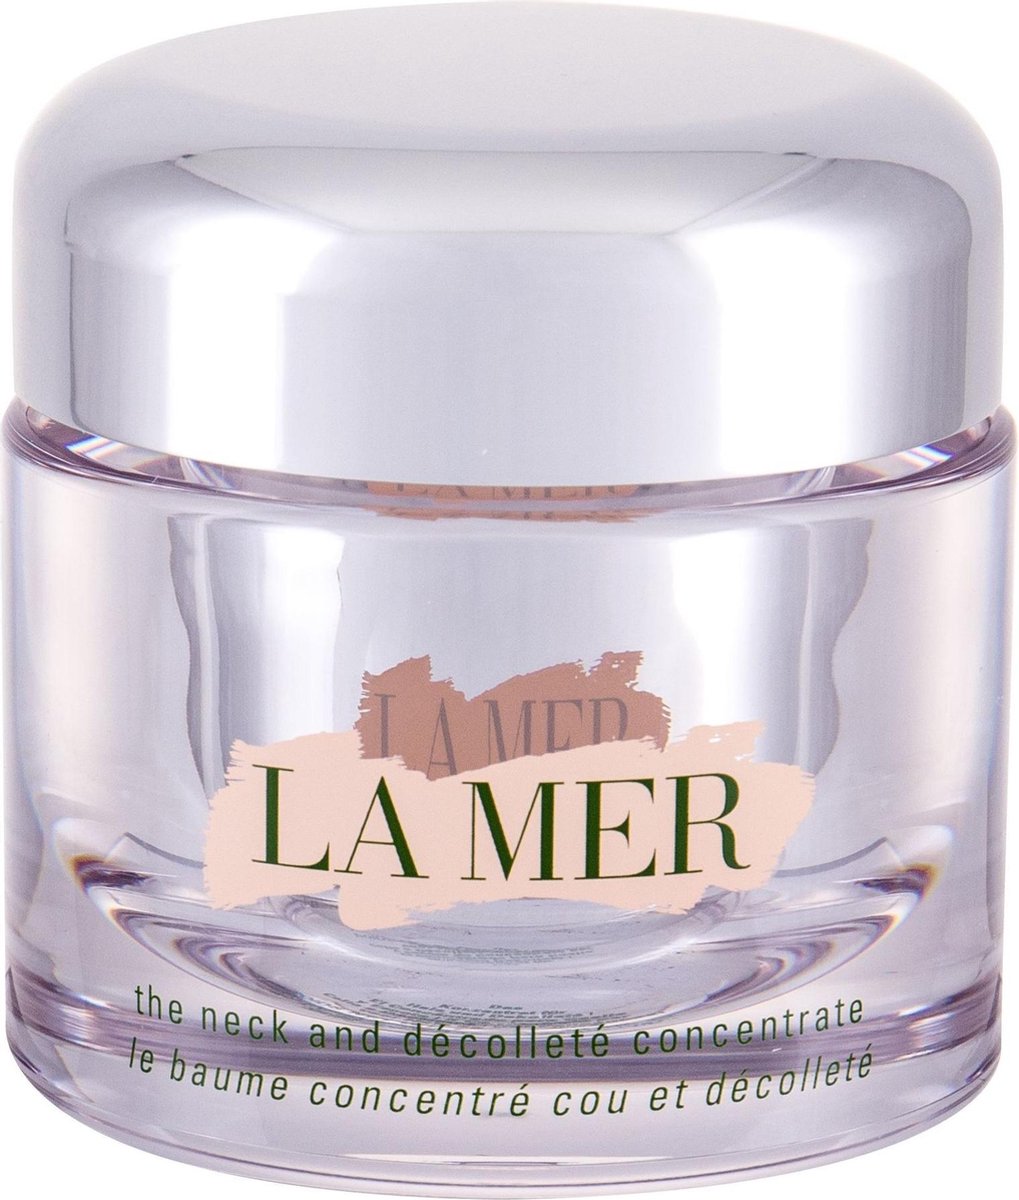 CREME DE LA MER - The Neck and Decollete Concentrate - 50 ml - 24 uurs crème